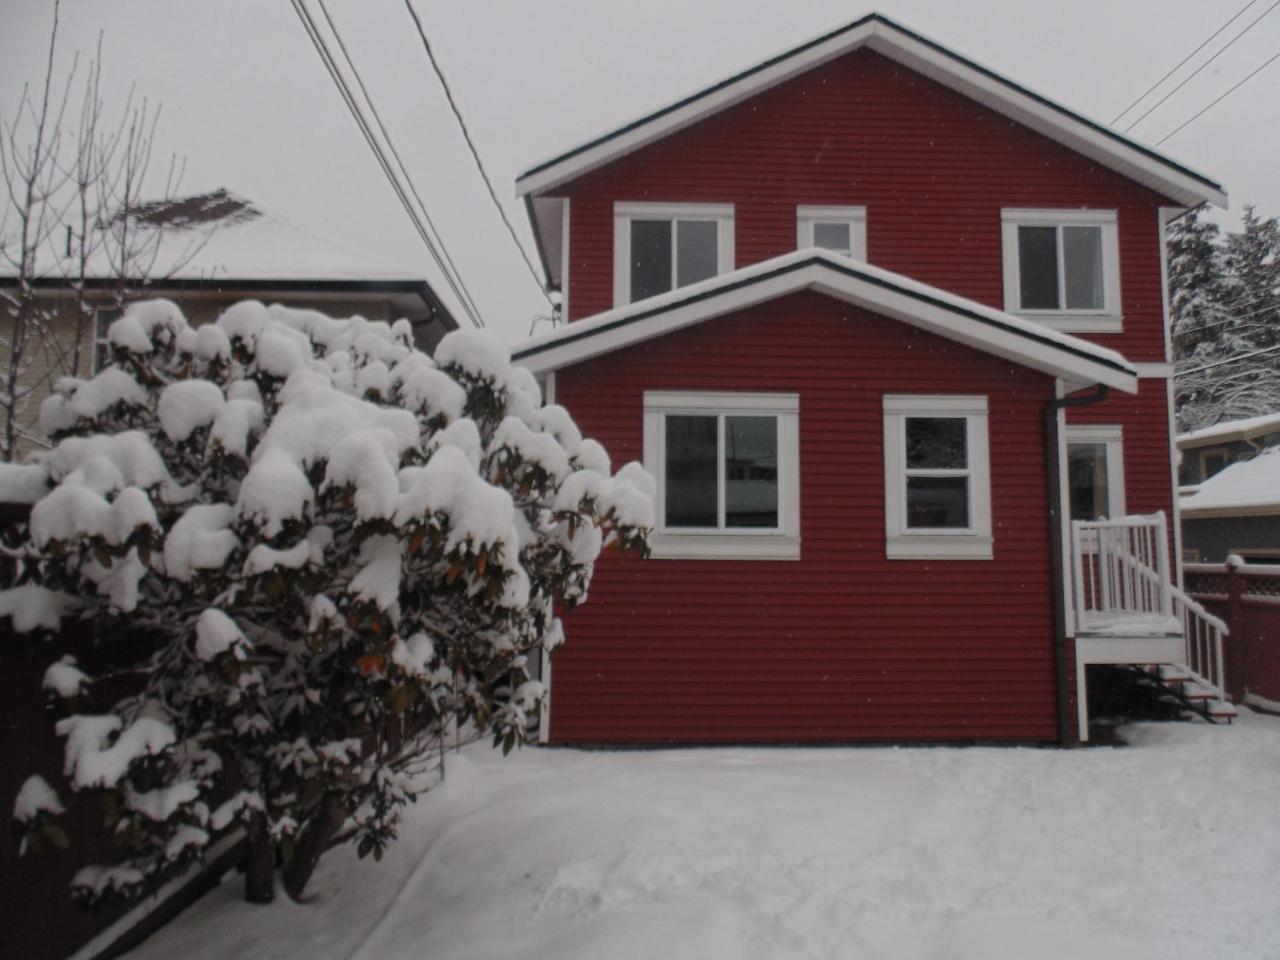 Gordon'S Guest House Vancouver Exterior photo